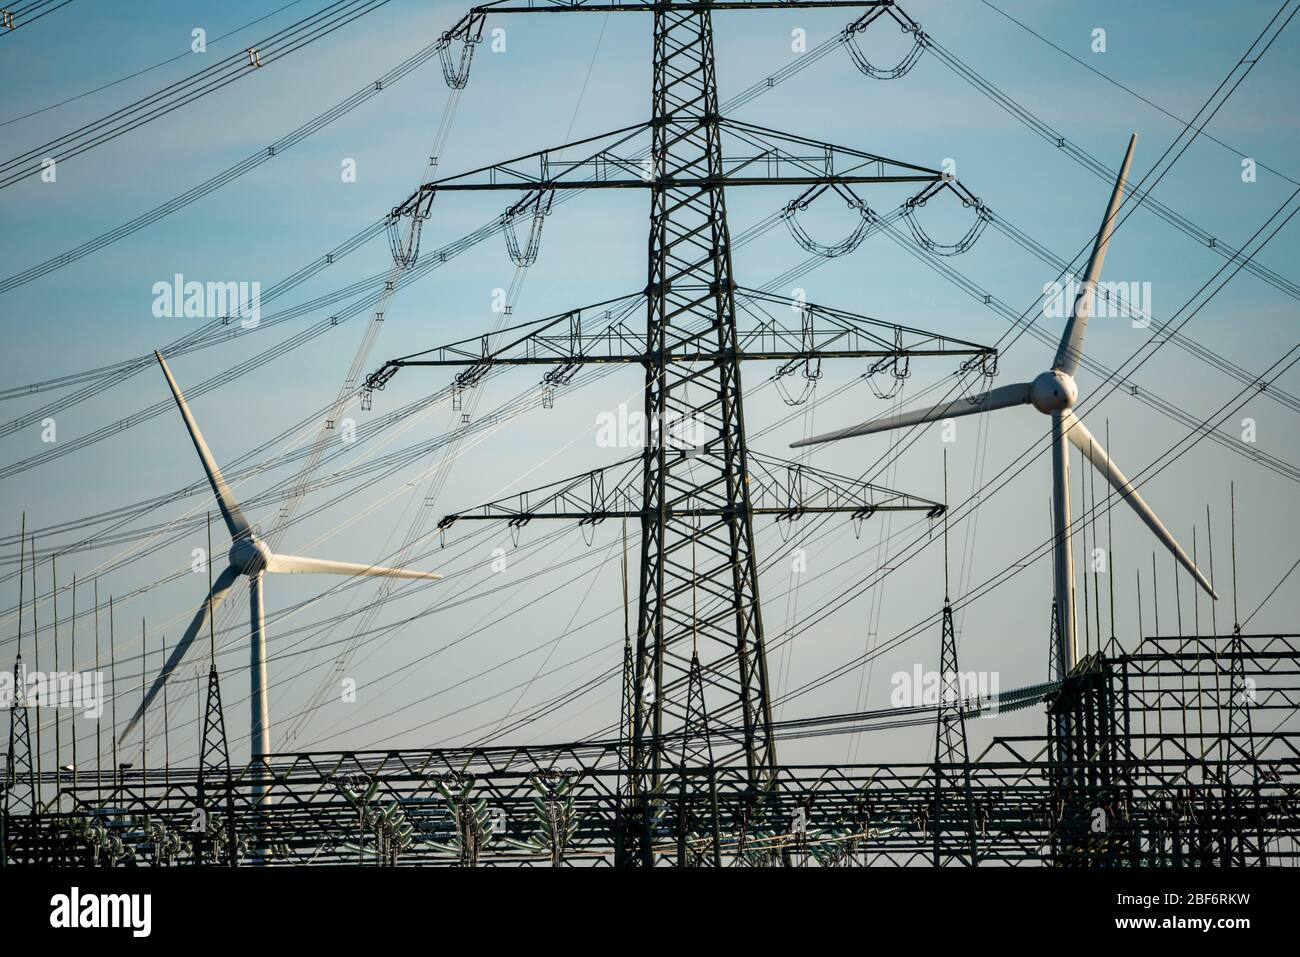 Linee ad altissima tensione, 380 KV, nella sottostazione di Gohrpunkt, l'elettricità proviene dall'area mineraria della lignite renish, dalla turbina eolica, dall'energia eolica, a G. Foto Stock